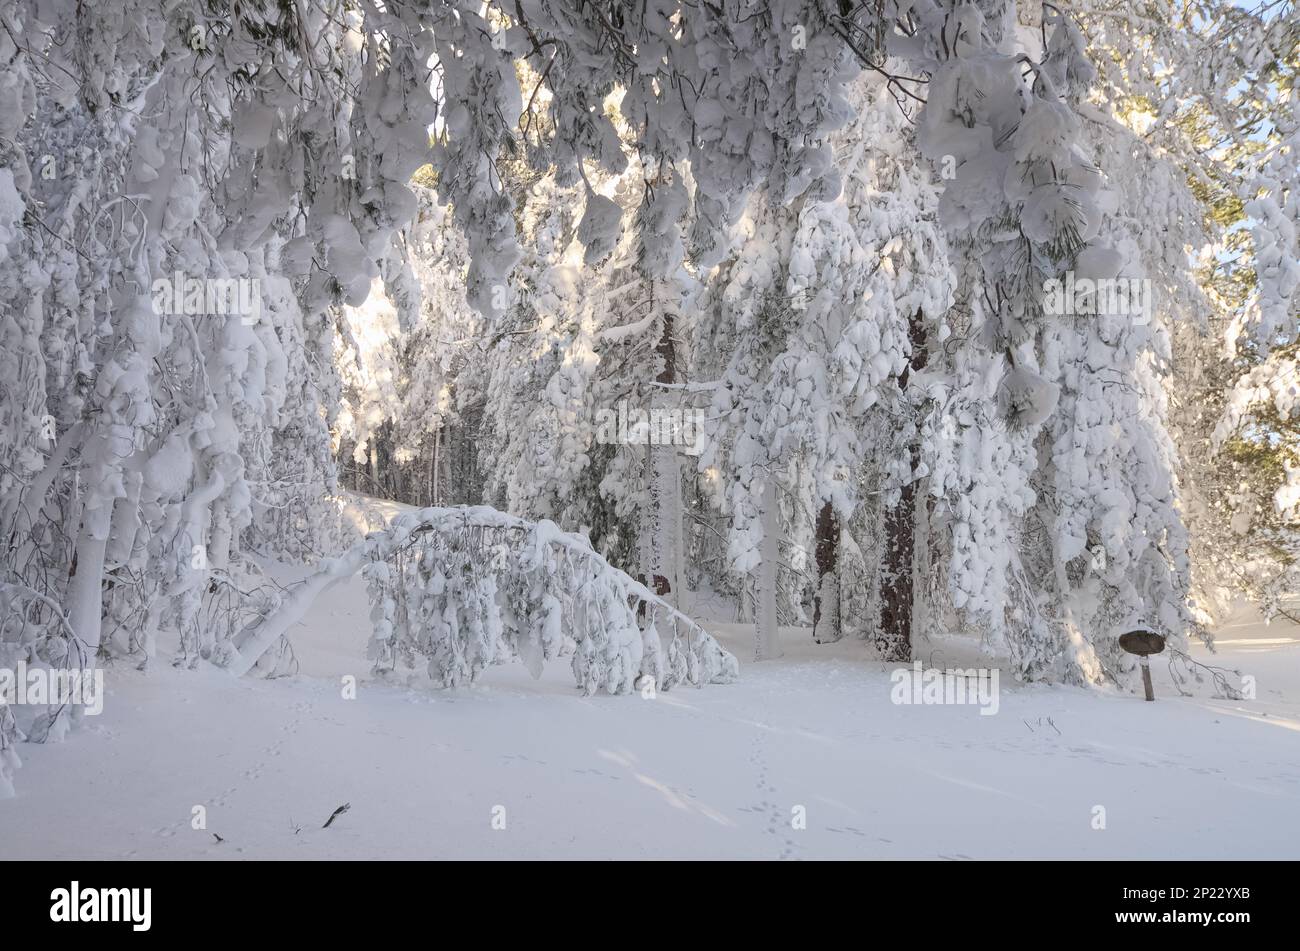 Des arbres hivernaux comme une cascade blanche de neige épaisse et gelée dans le parc national de l'Etna, Sicile, Italie Banque D'Images